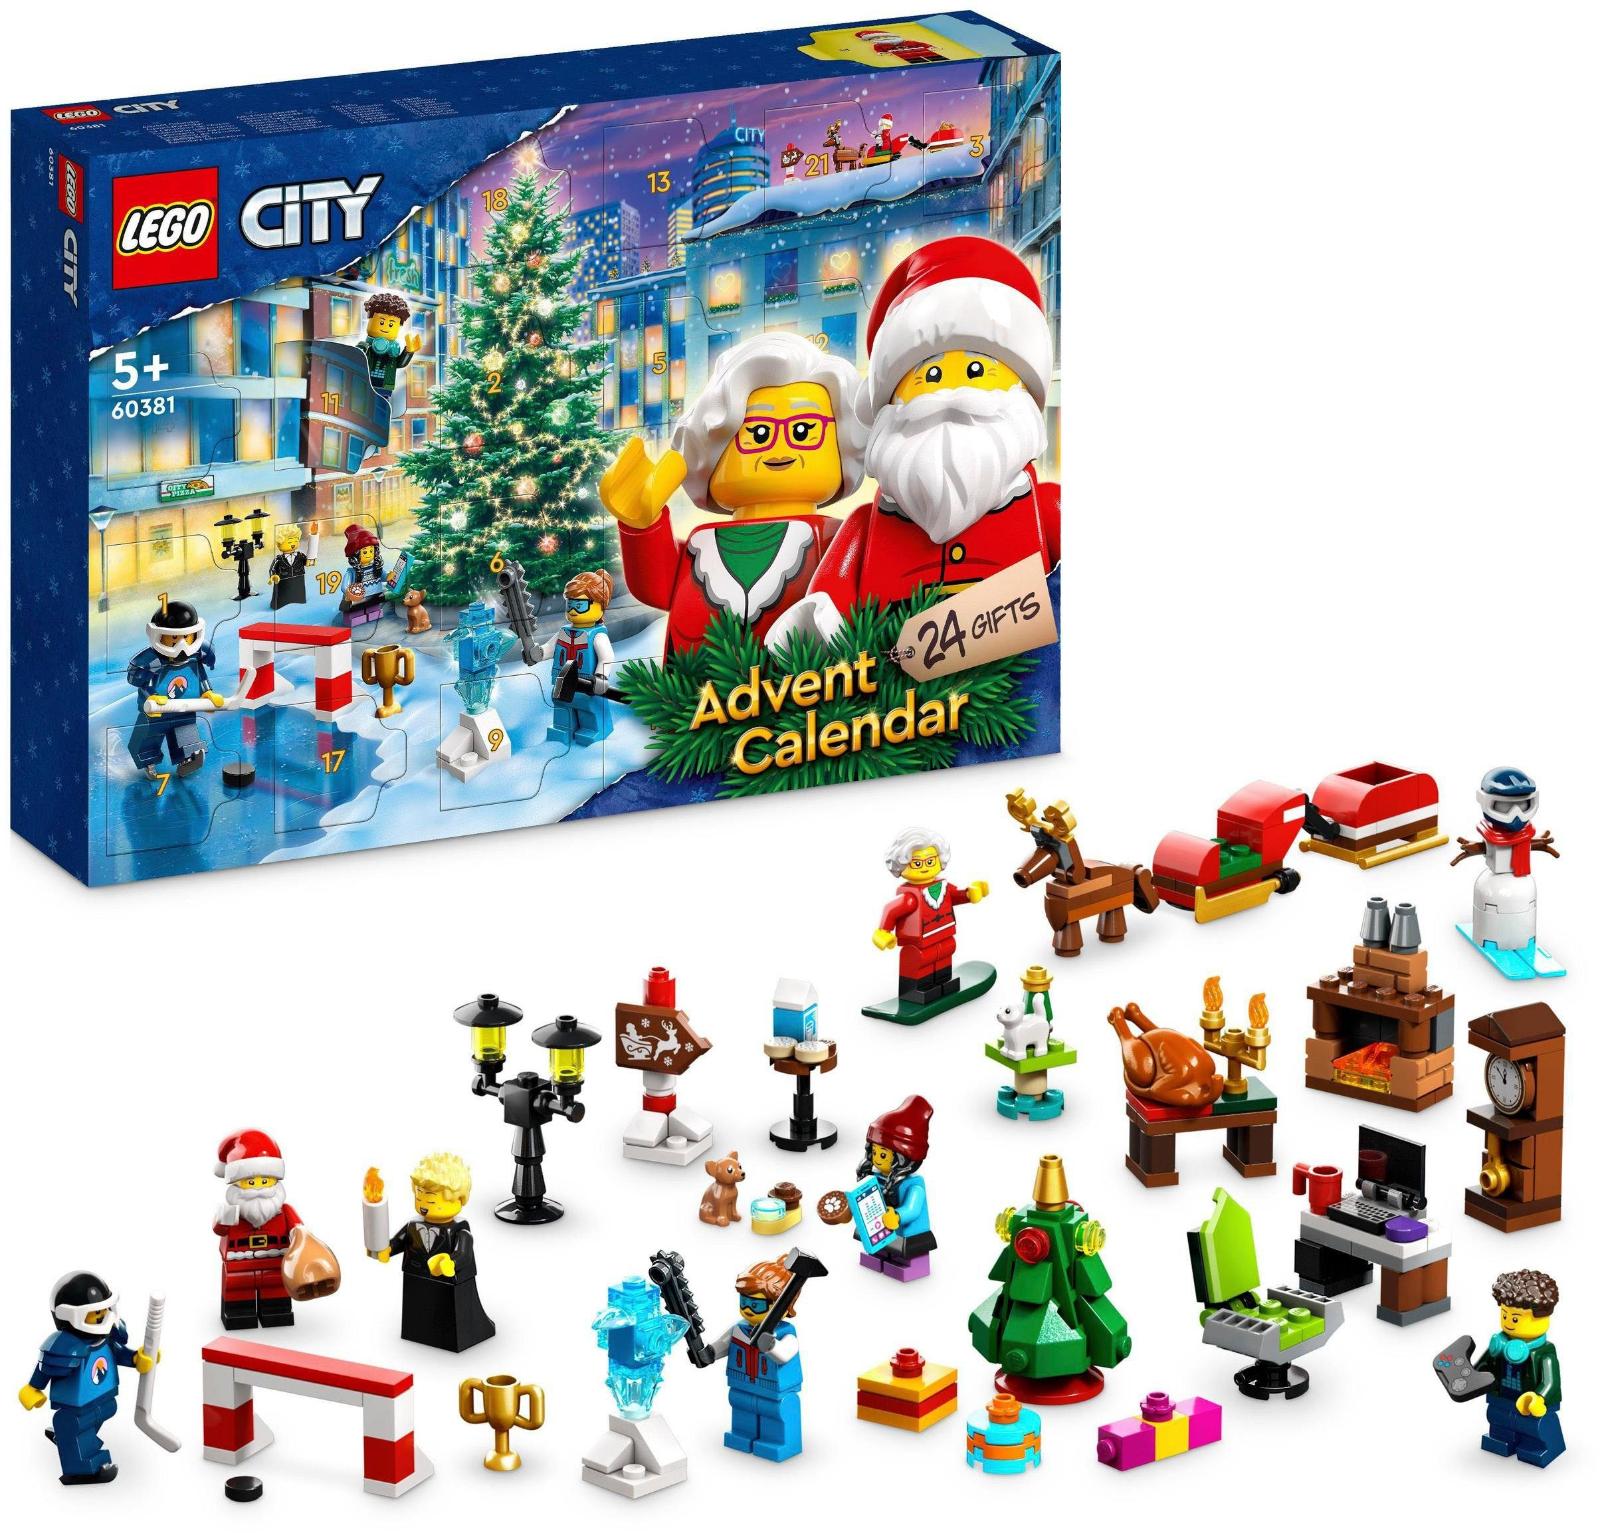 8P727 LEGO CITY ADVENTNÝ KALENDÁR (60381) *0,4*36073364* KA23/15 - Hračky